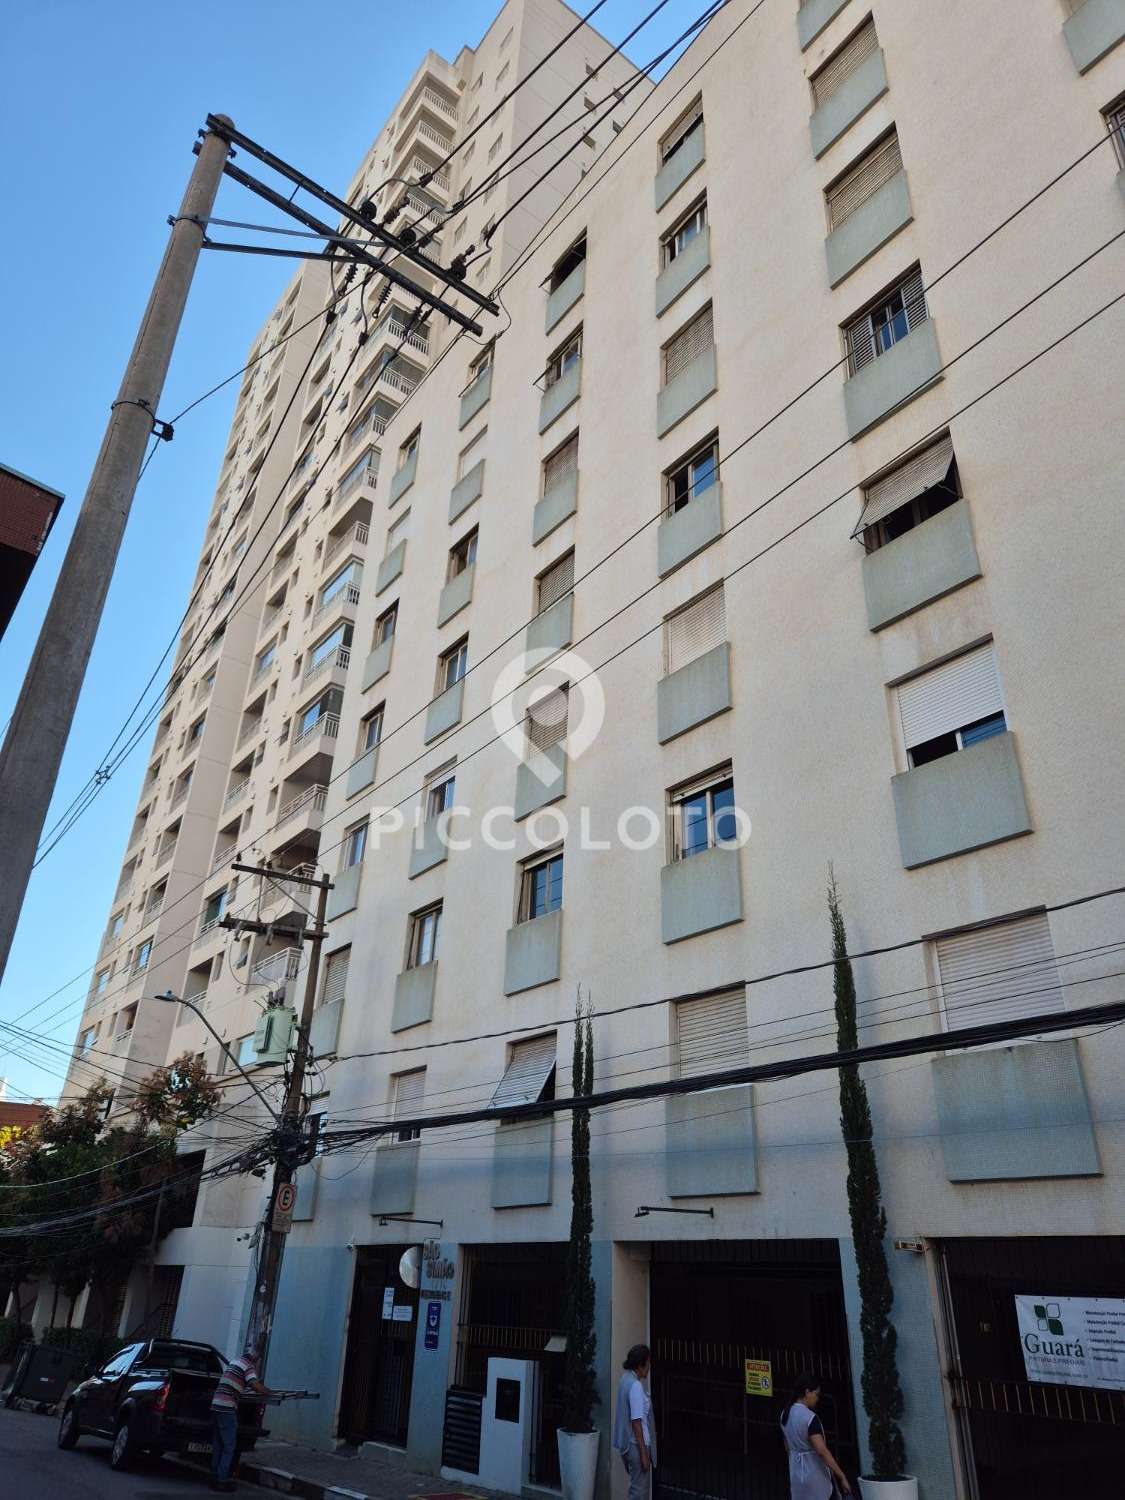 Piccoloto - Apartamento à venda no Centro em Campinas